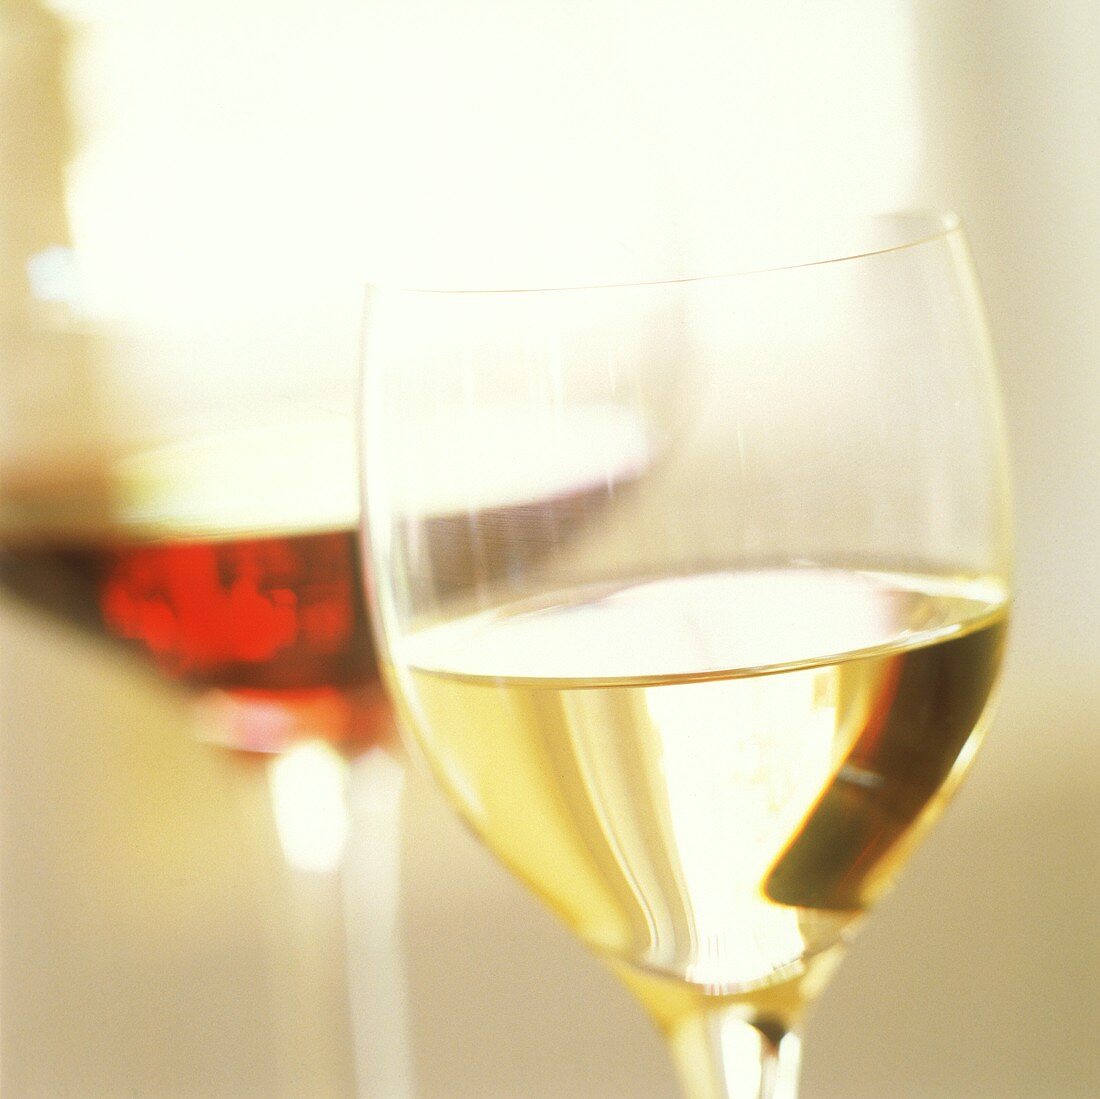 Weissweinglas vor einem Rotweinglas